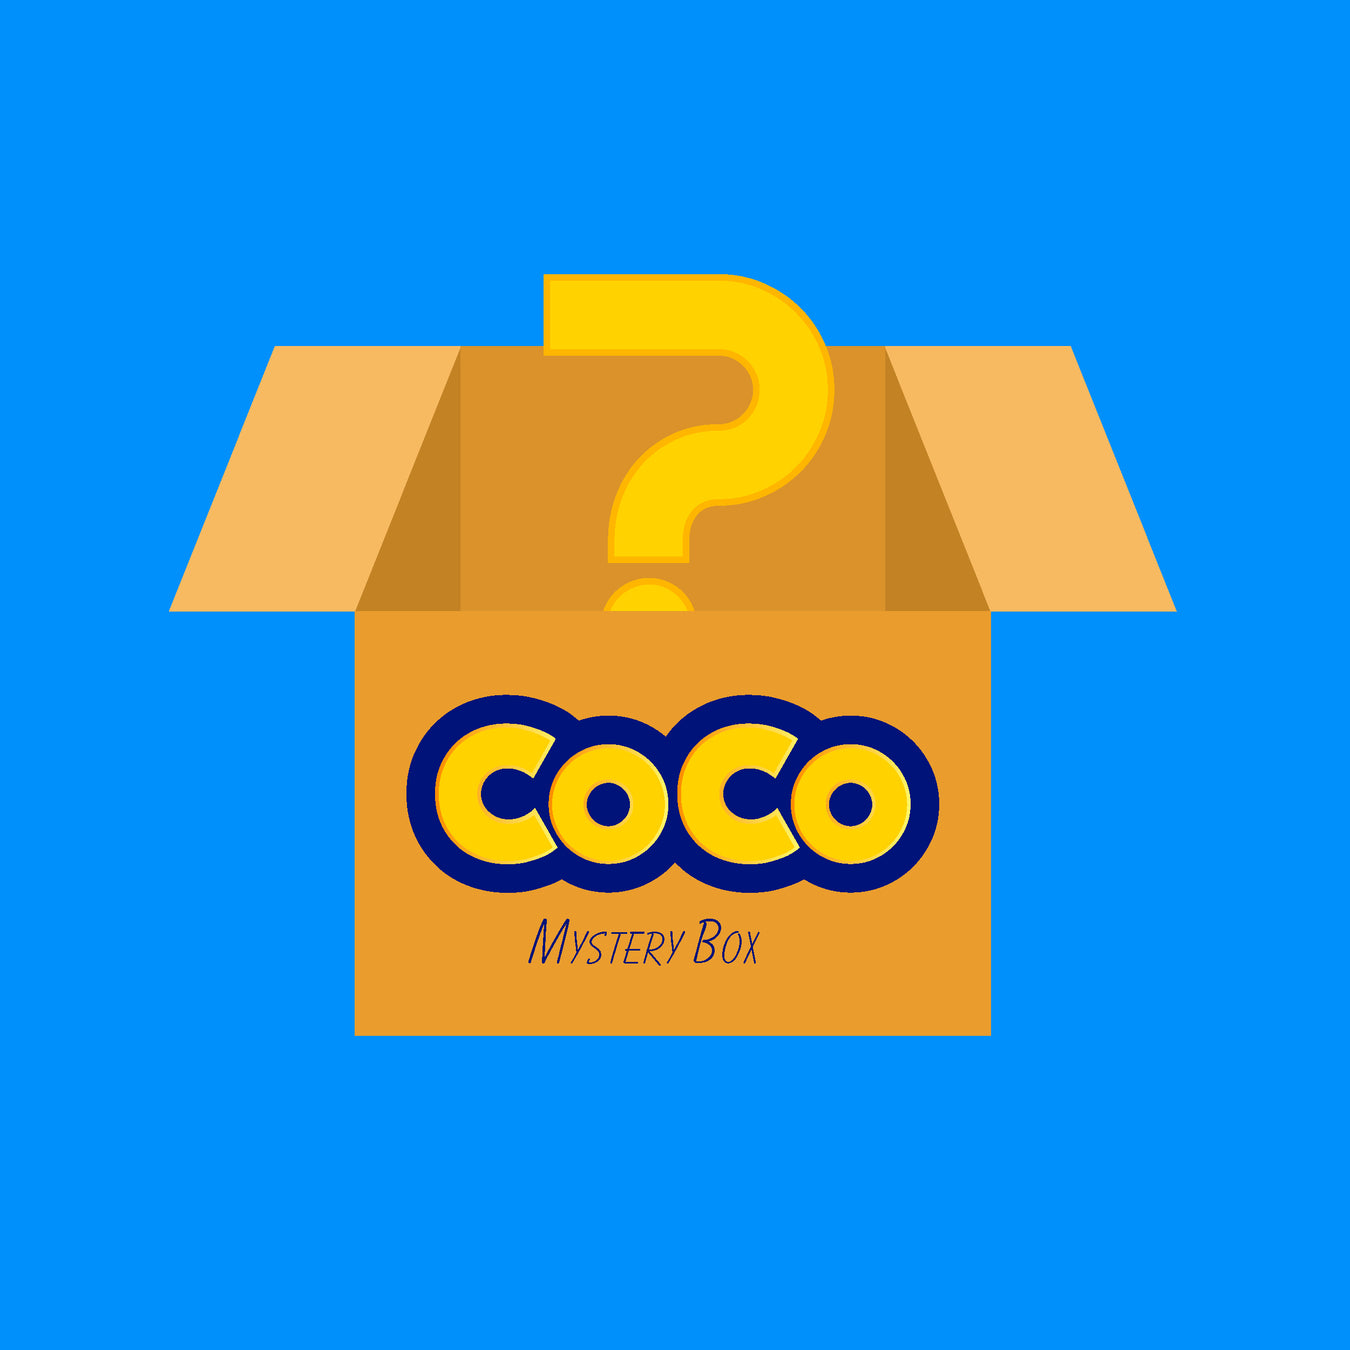 CoCo Mystery Box